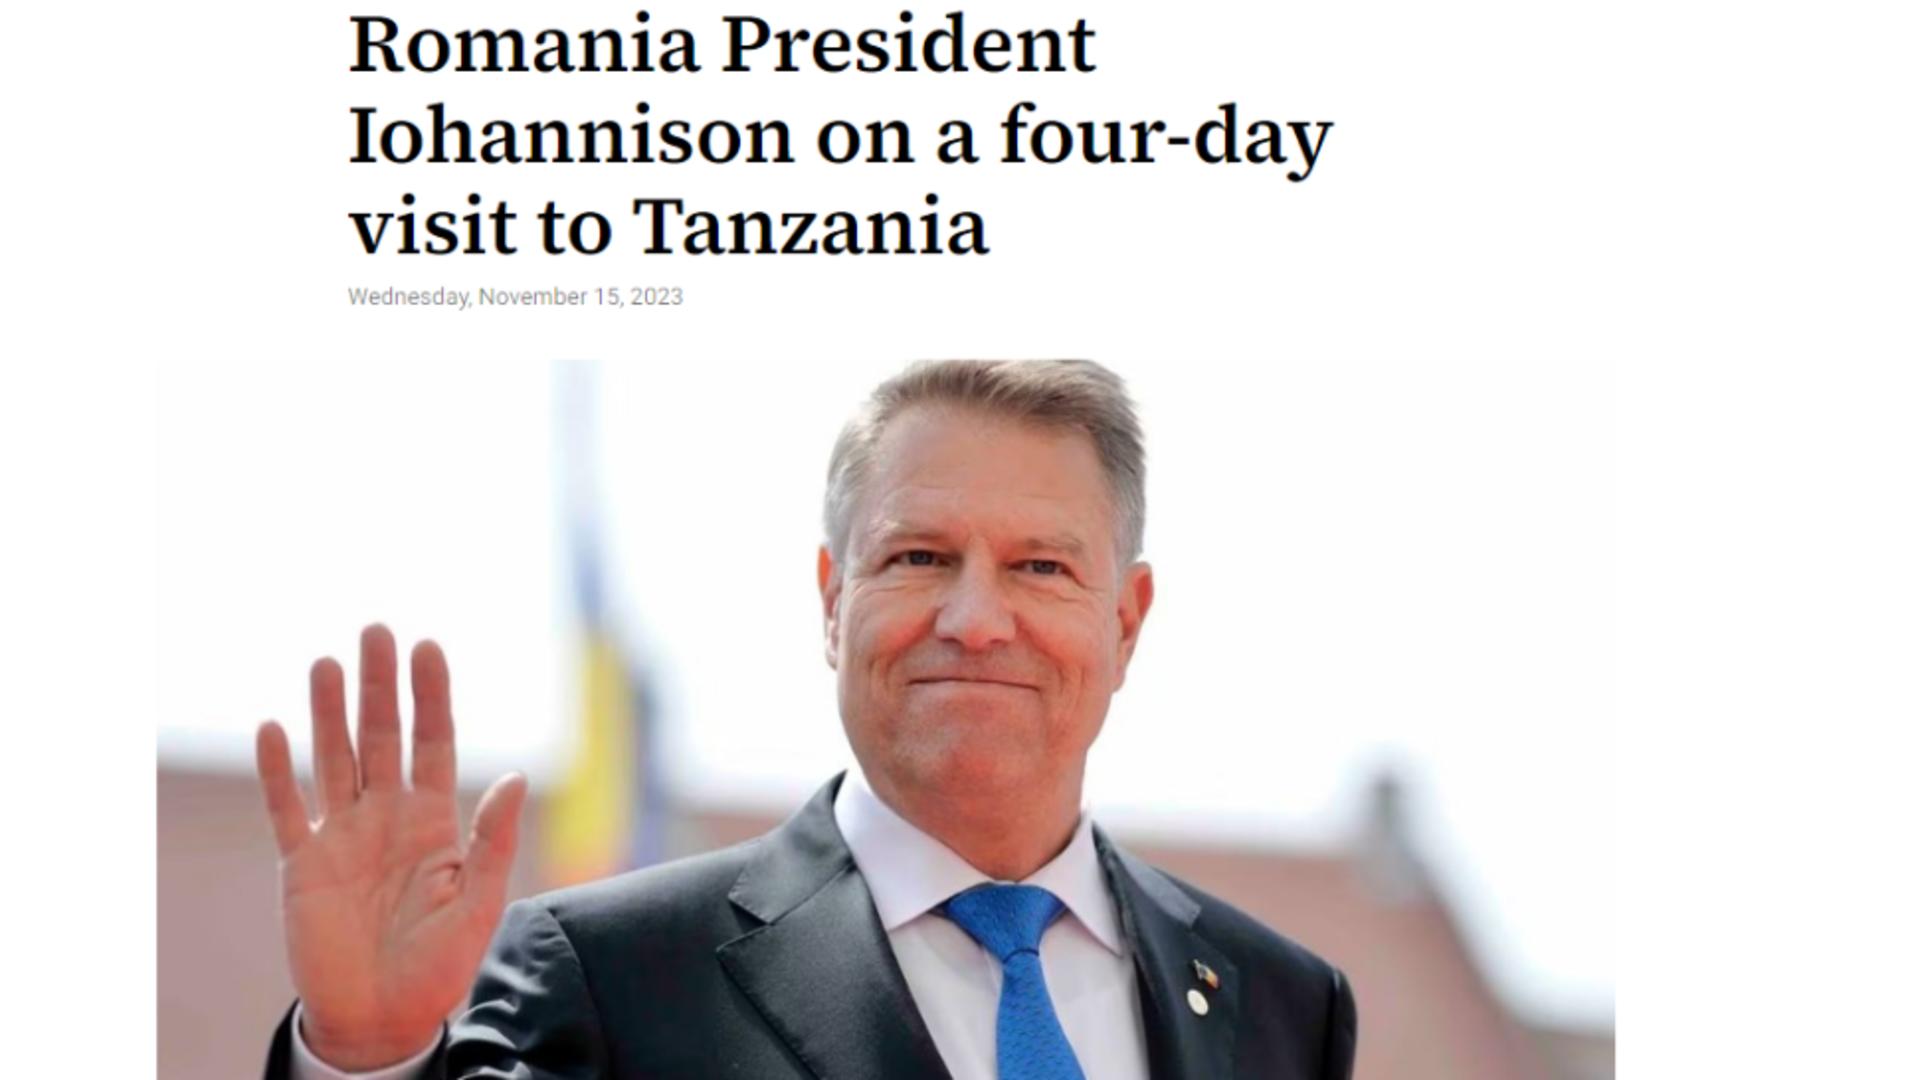 Presa din Tanzania l-a botezat pe Iohannis. Vizita președintelui „Iohannison”, anunțată cu surle și trâmbițe